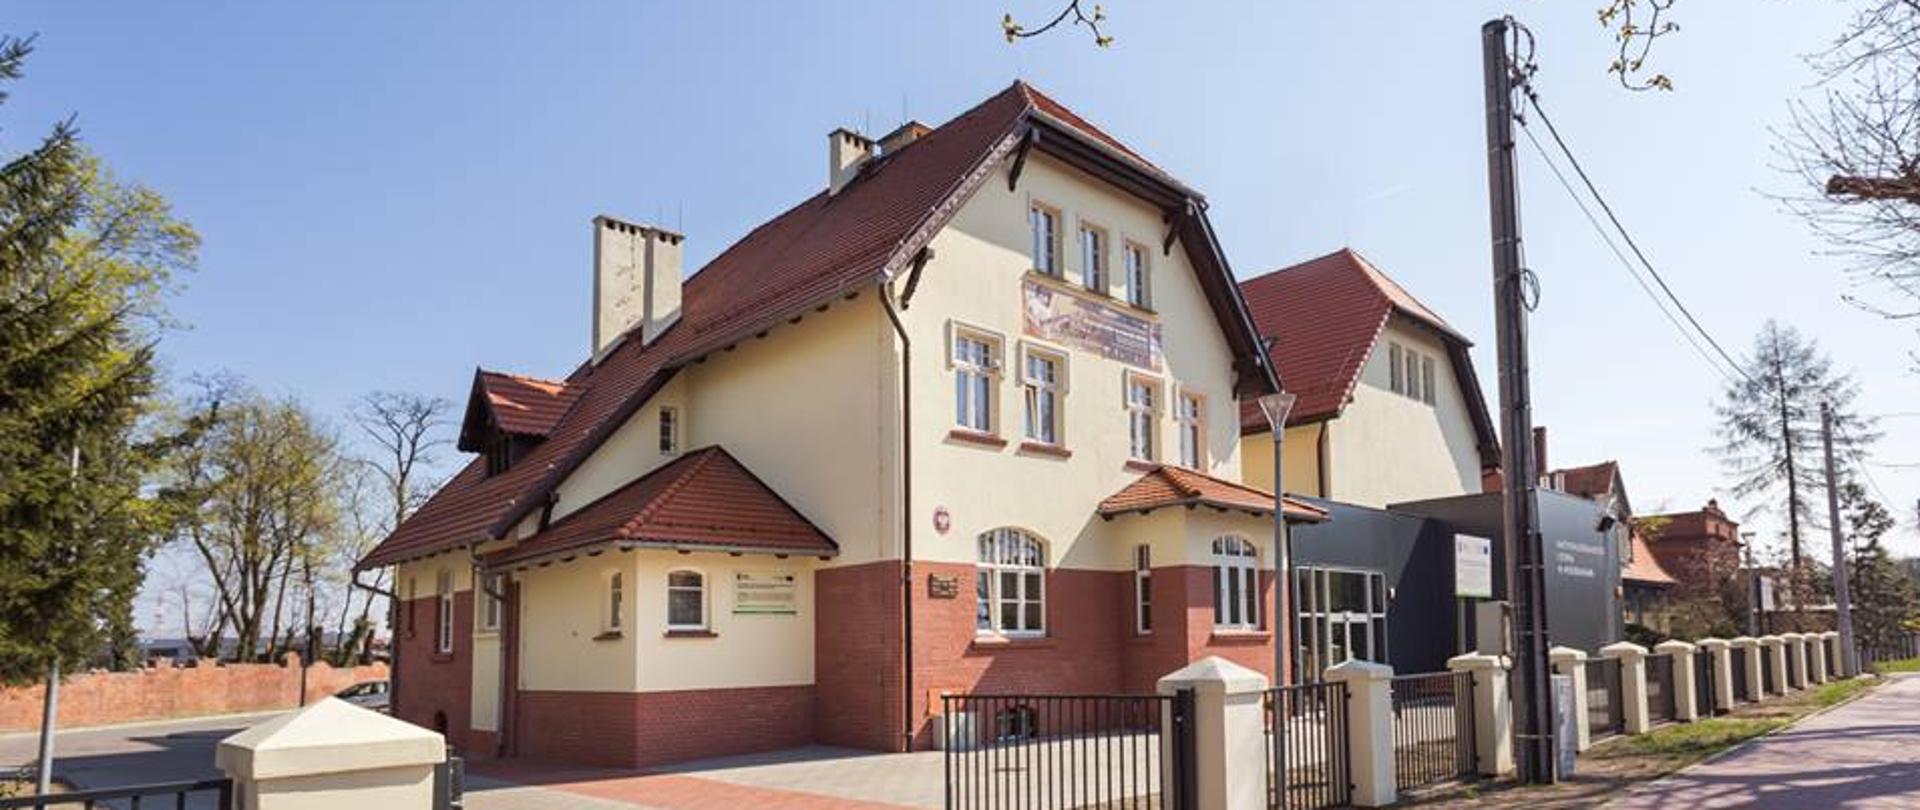 Zdjęcie przedstawia budnek państwowej szkoły muzycznej w Pleszewie